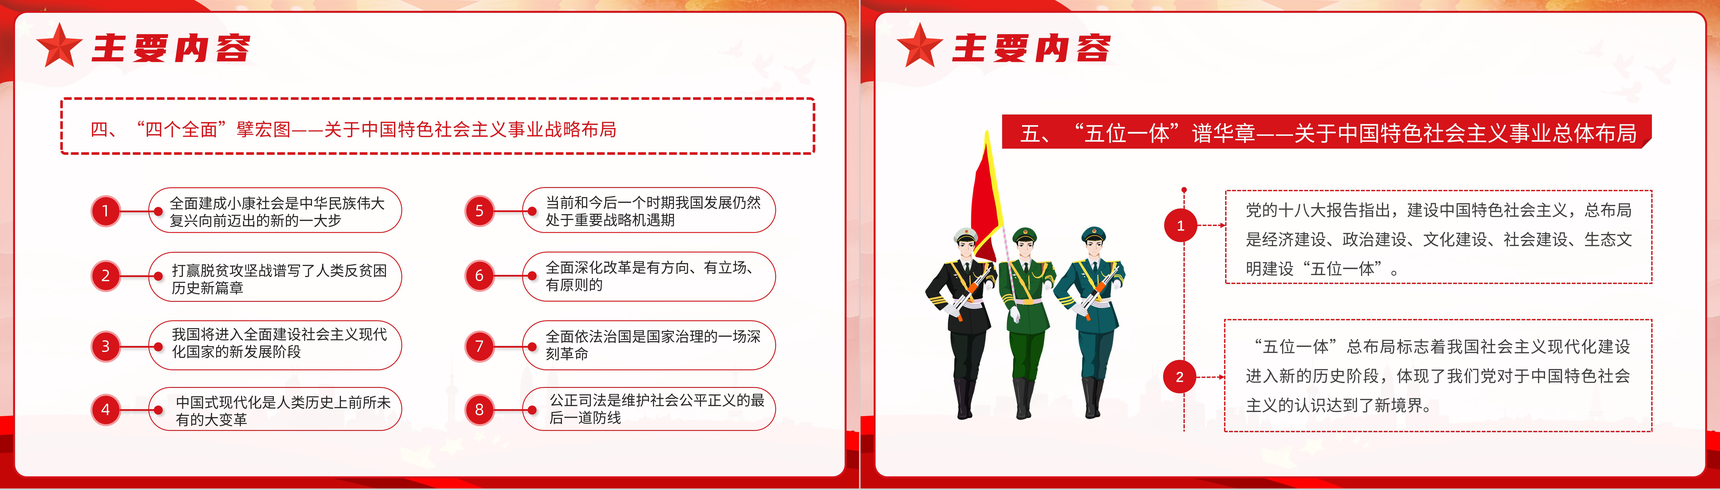 新时代中国特色社会主义思想学习问答思想阐述PPT模板-6